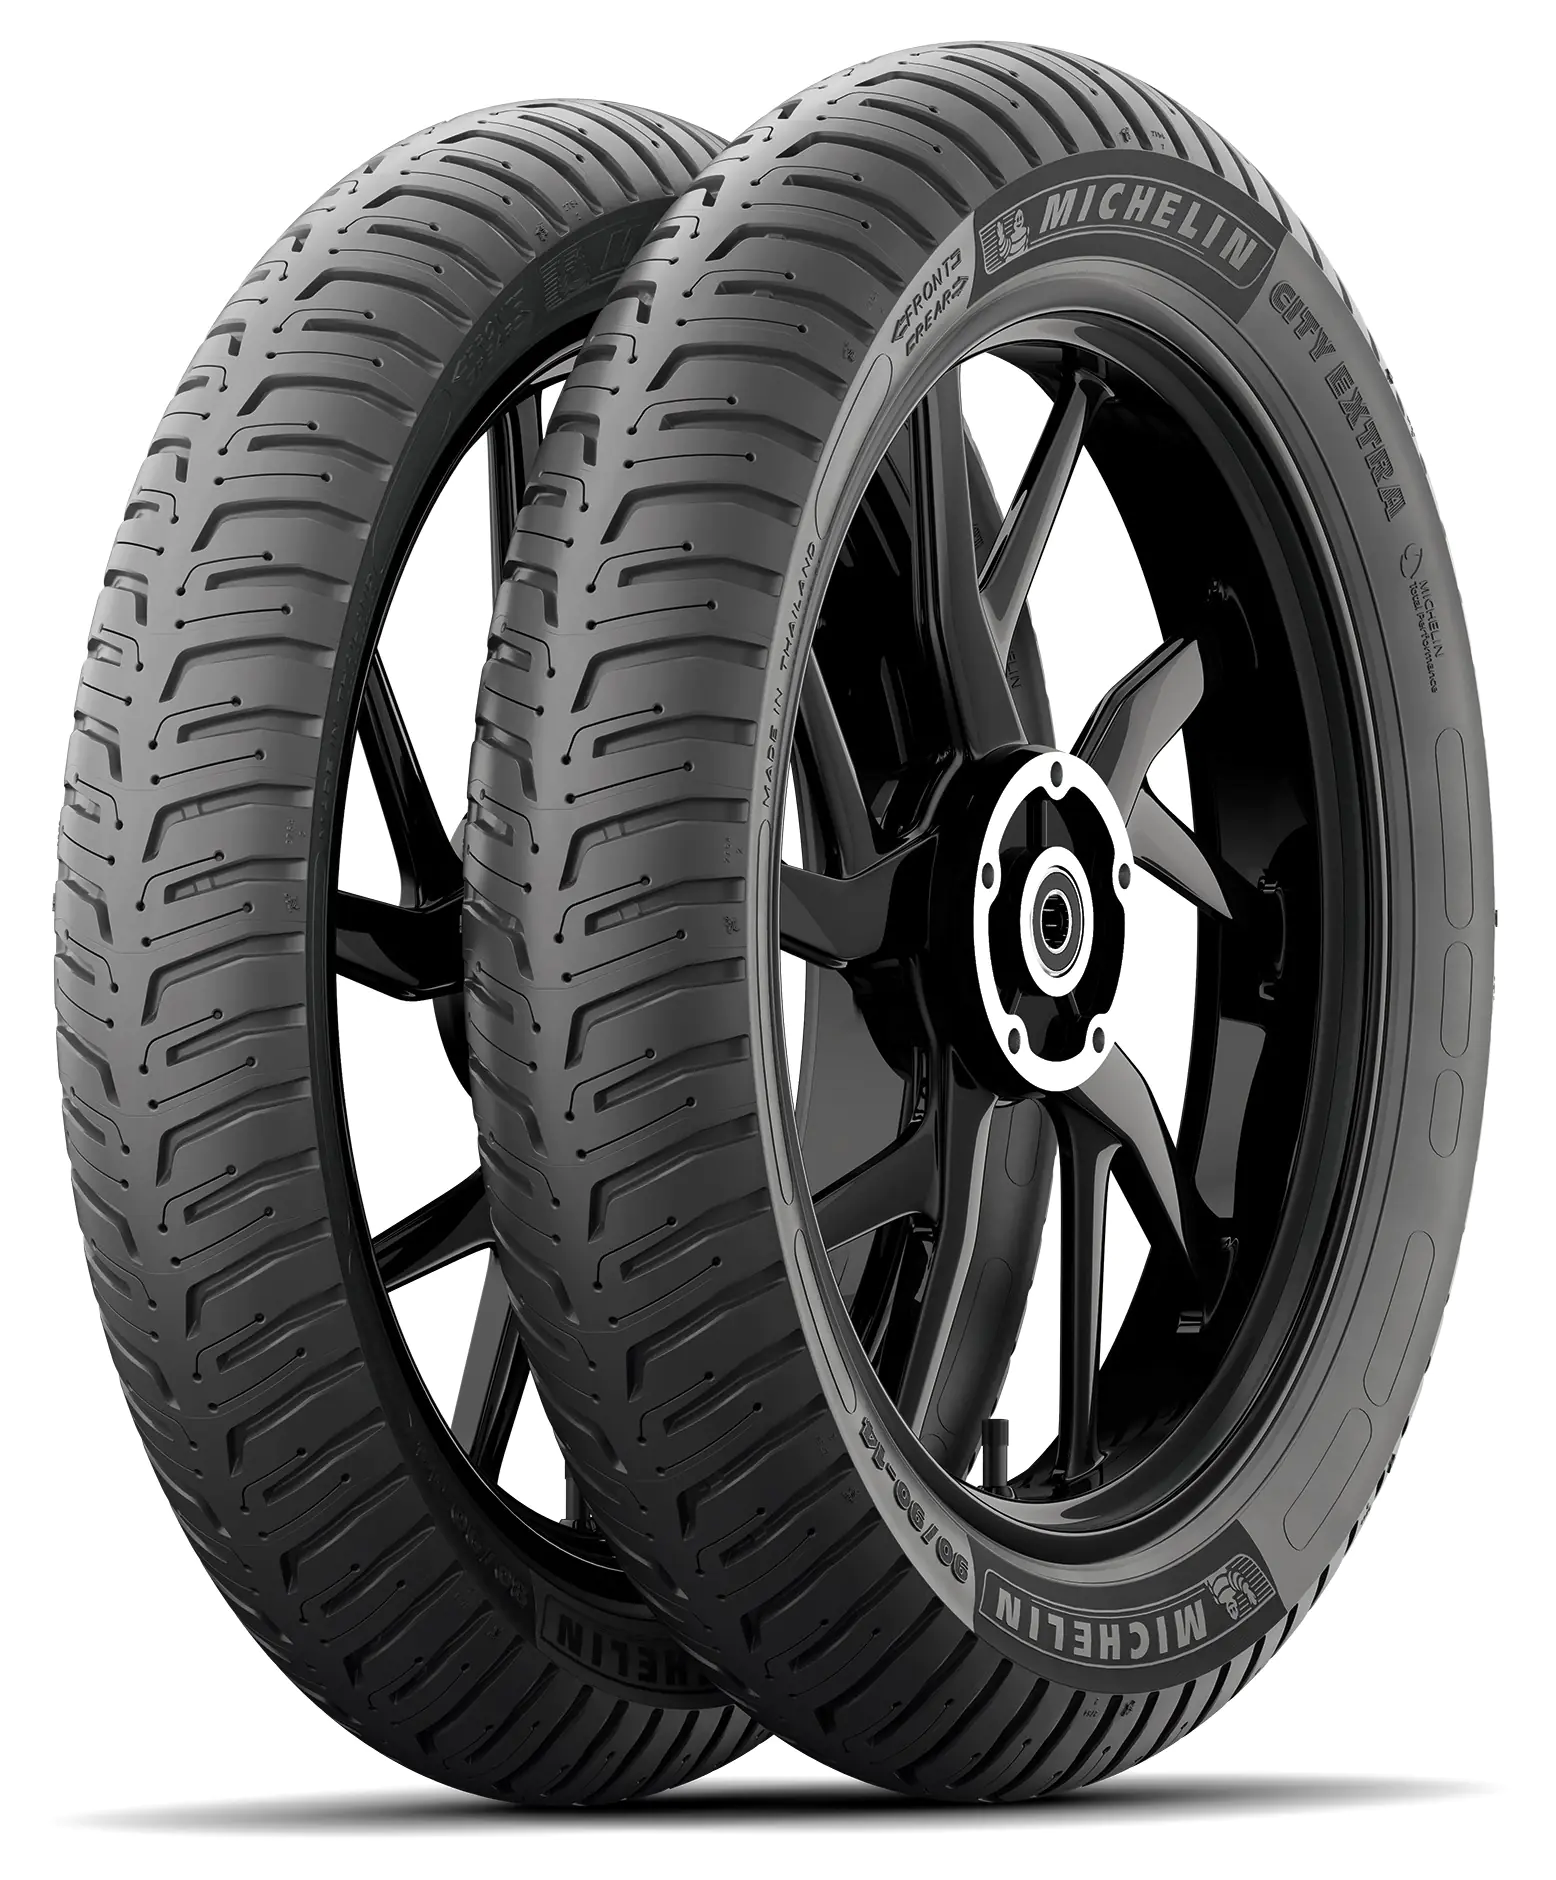 Michelin Michelin 3.00-10 50J CITY EXTRA pneumatici nuovi Estivo 